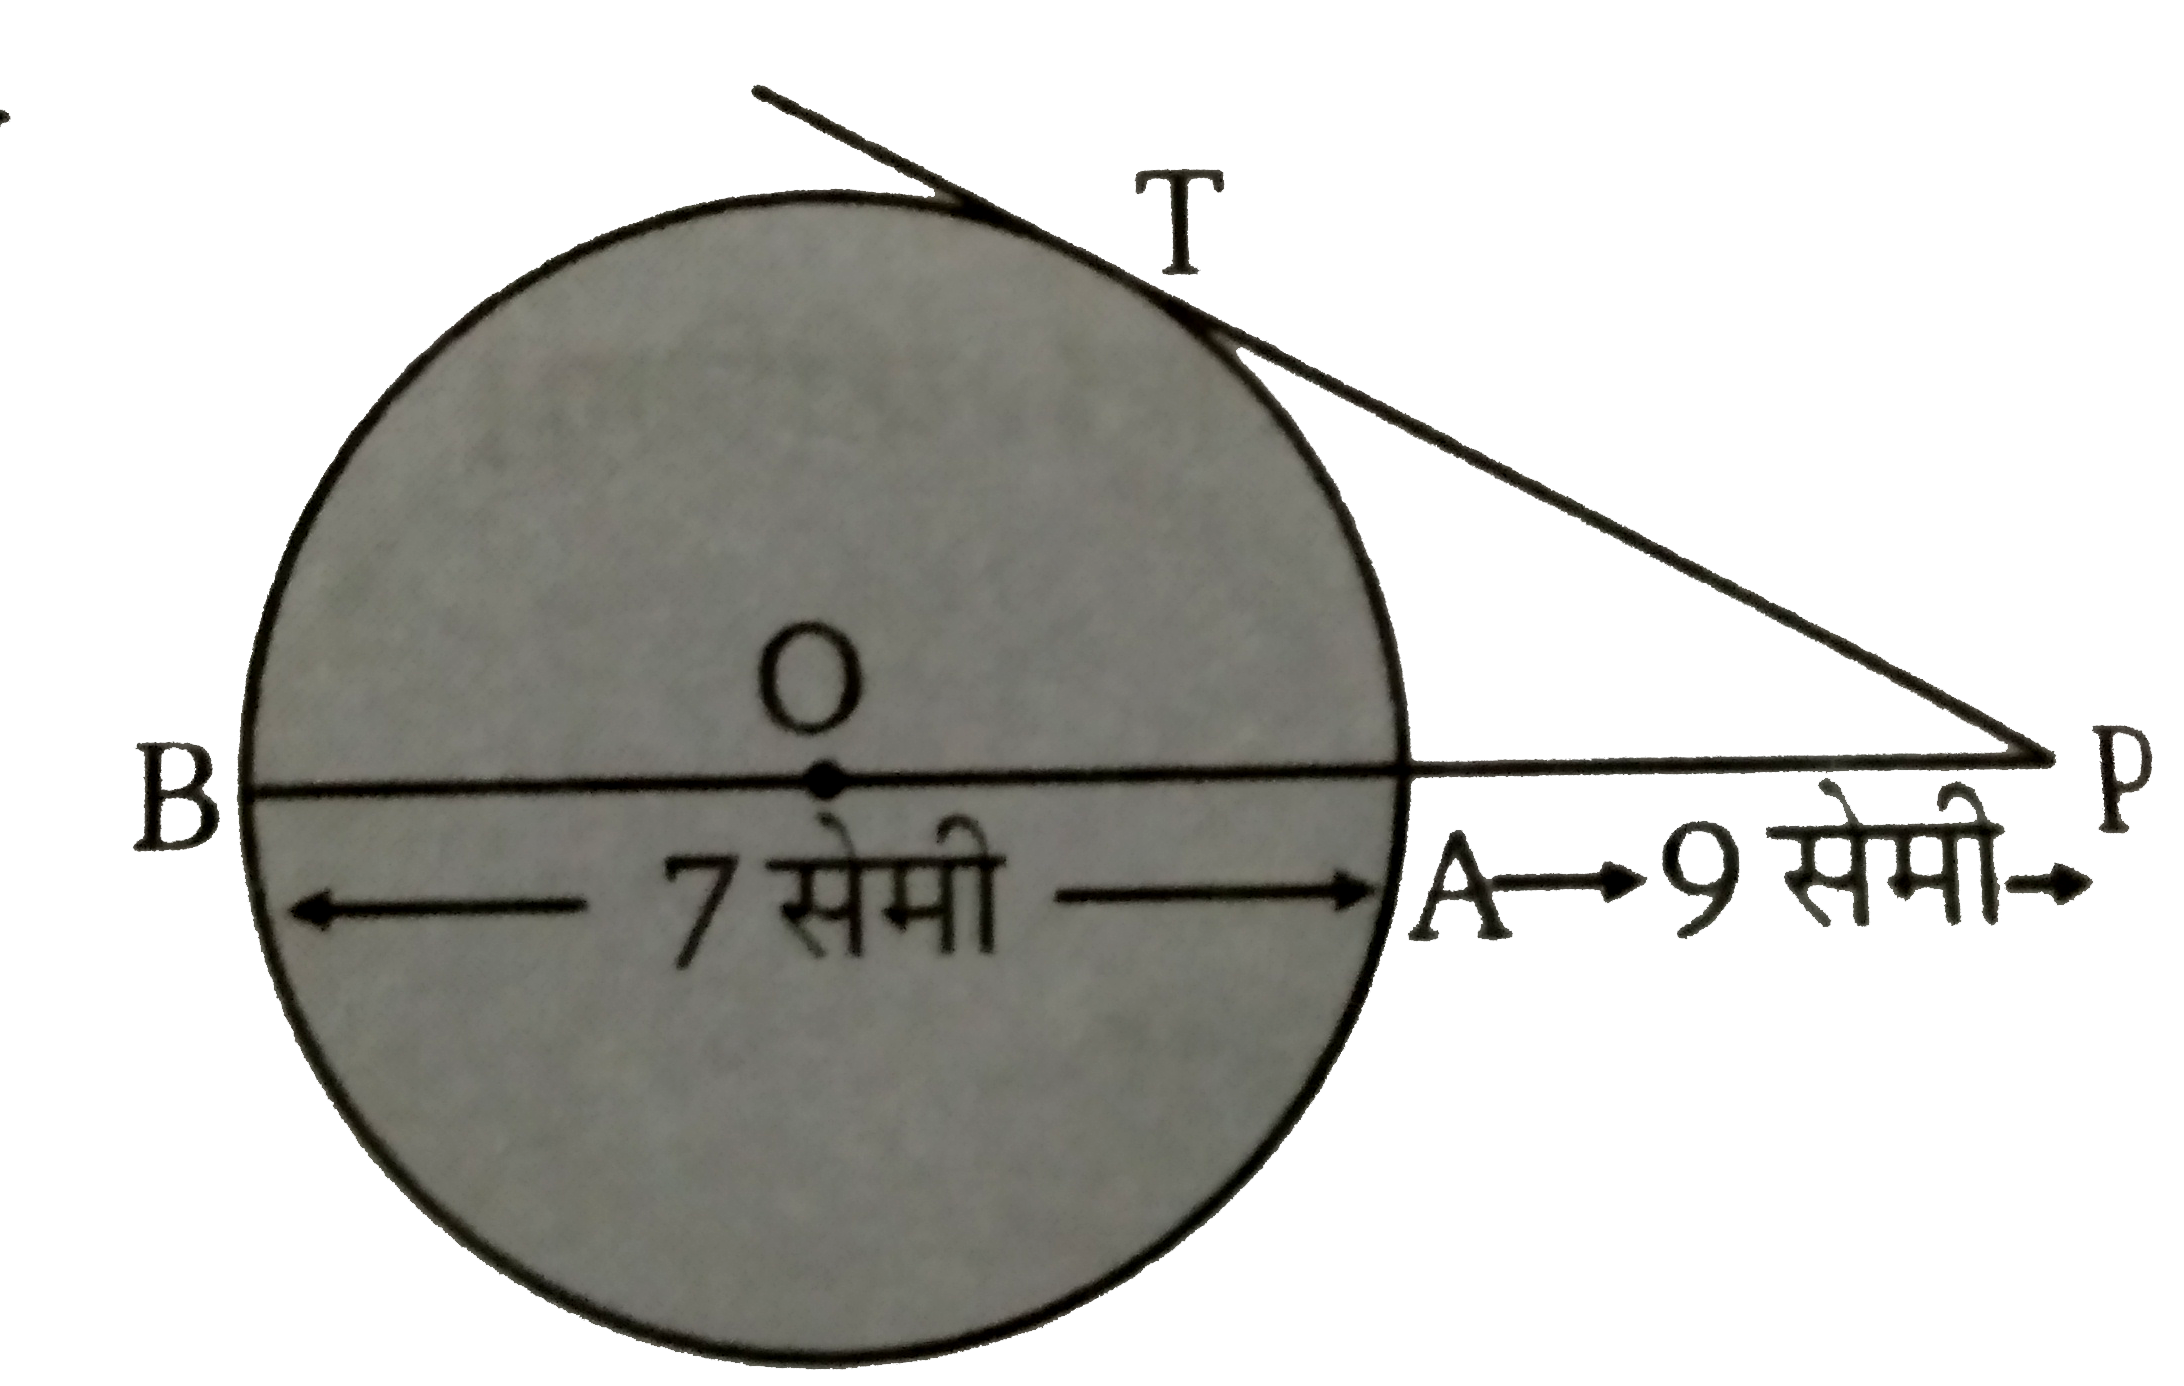 चित्र में किसी वृत्त के बिन्दु T  पर स्पर्शी PT  है तथा PAB  वृत्त की एक छेदक रेखा है। यदि PA = 9  सेमी तथा AB = 7  सेमी तब PT  की माप ज्ञात कीजिए ।